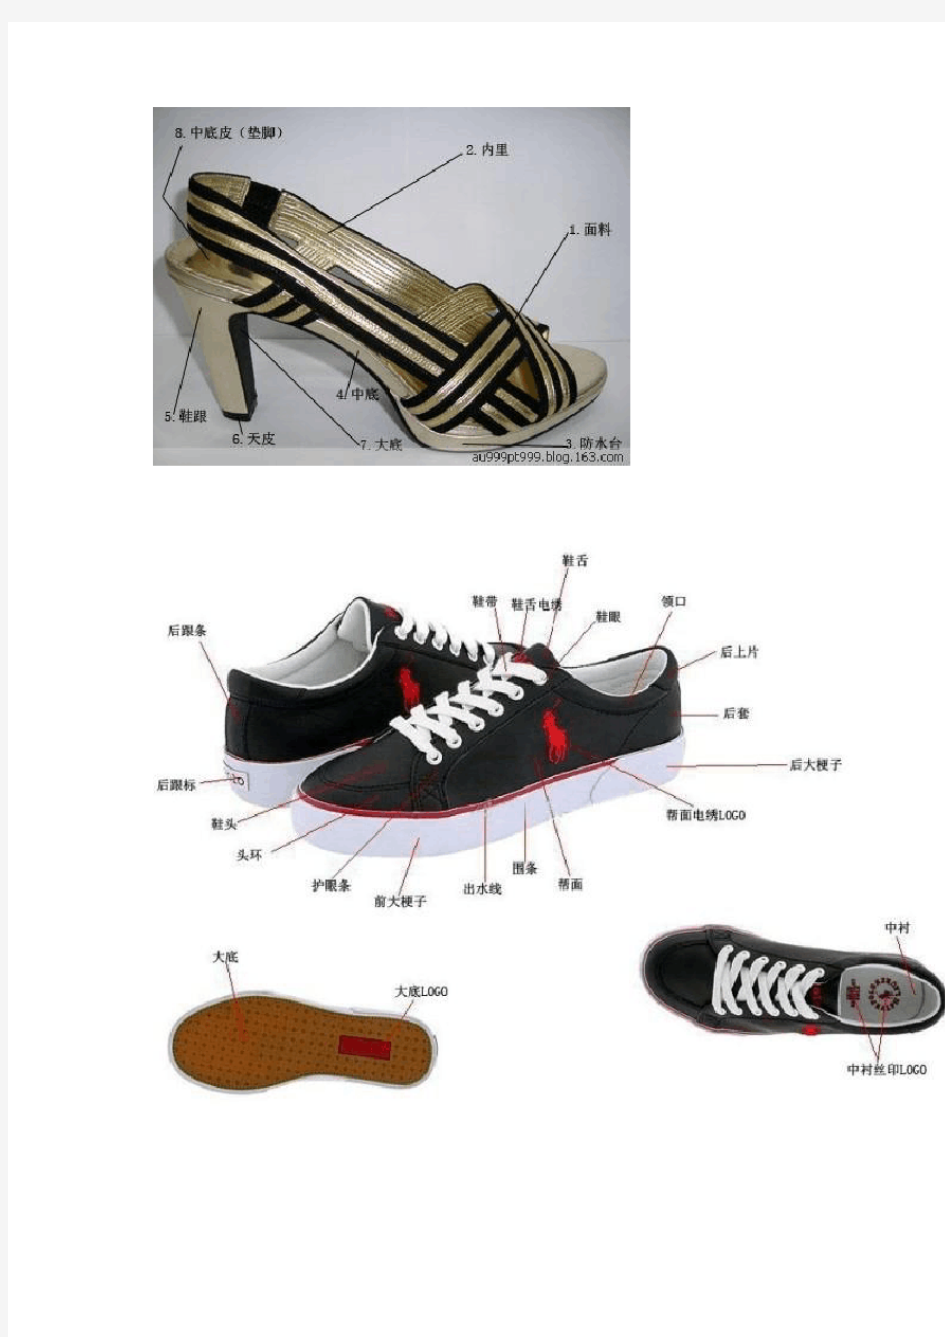 [鞋业知识  ]鞋子部位名称及英文对照